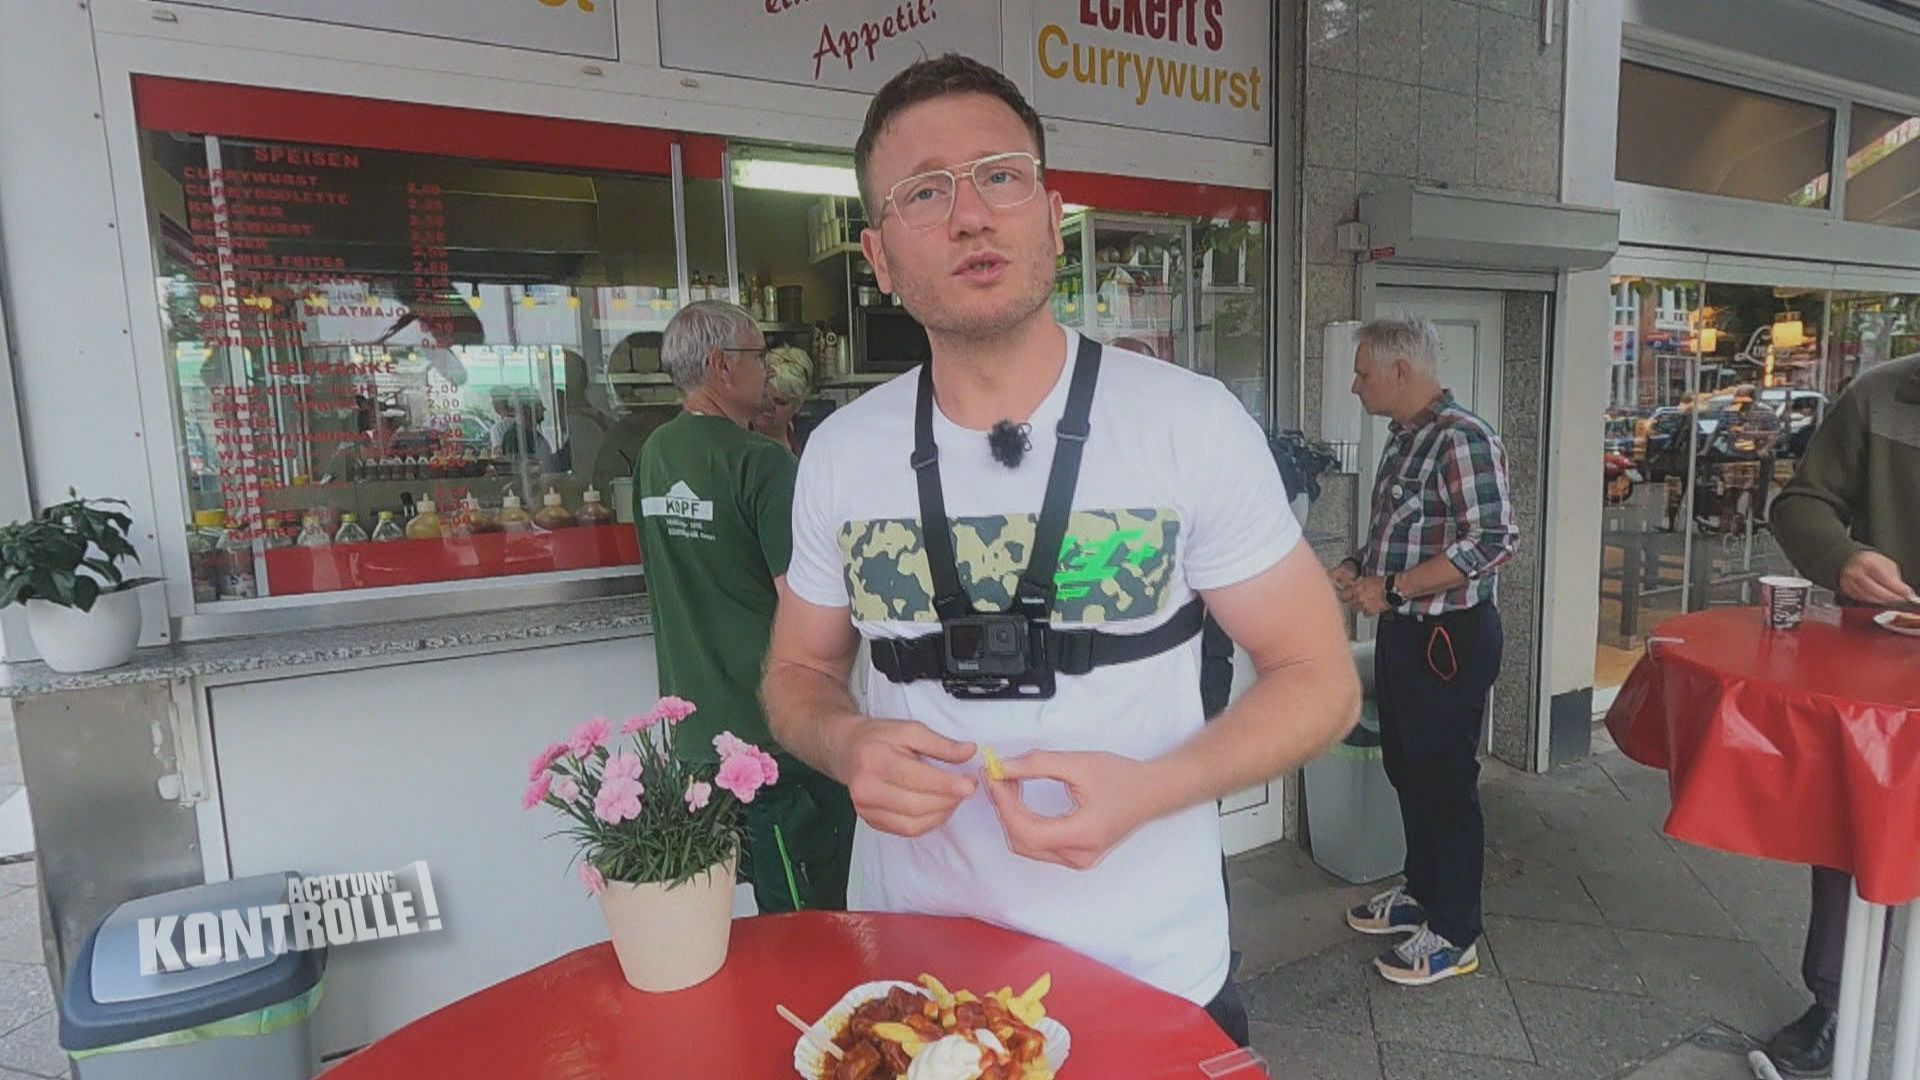 Thema u. a.: Mission Currywurst - Die beste Currywurst Berlins 